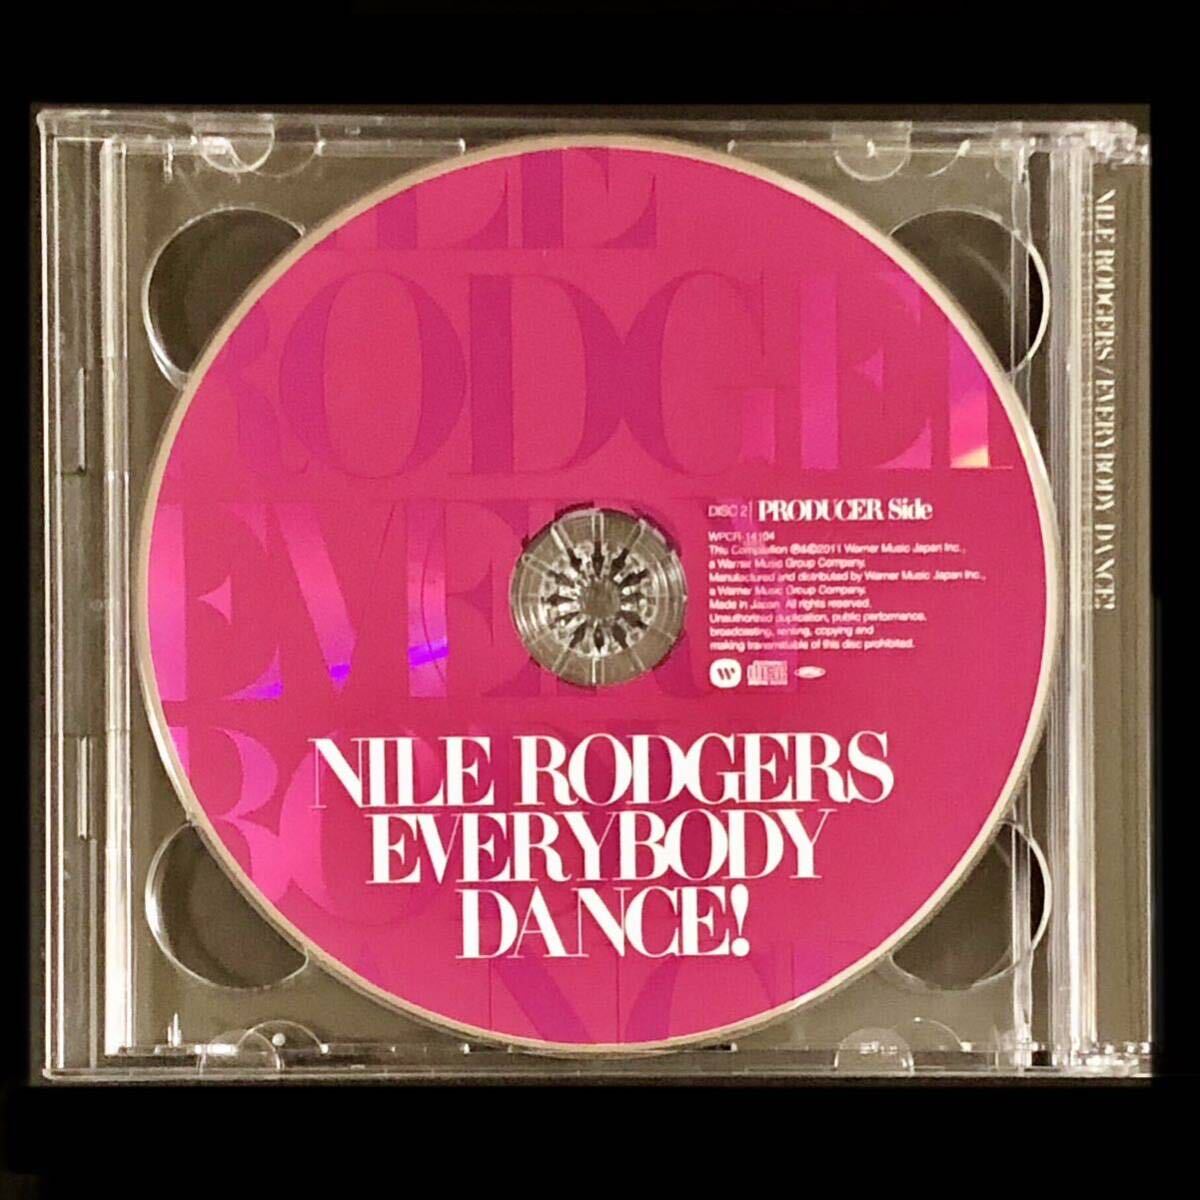 廃盤★2枚組CD「EVERYBODY DANCE!」NILE RODGERS★BEST エヴリバディ・ダンス！ナイル・ロジャース Chic Madonna Diana Ross Sister Sledge